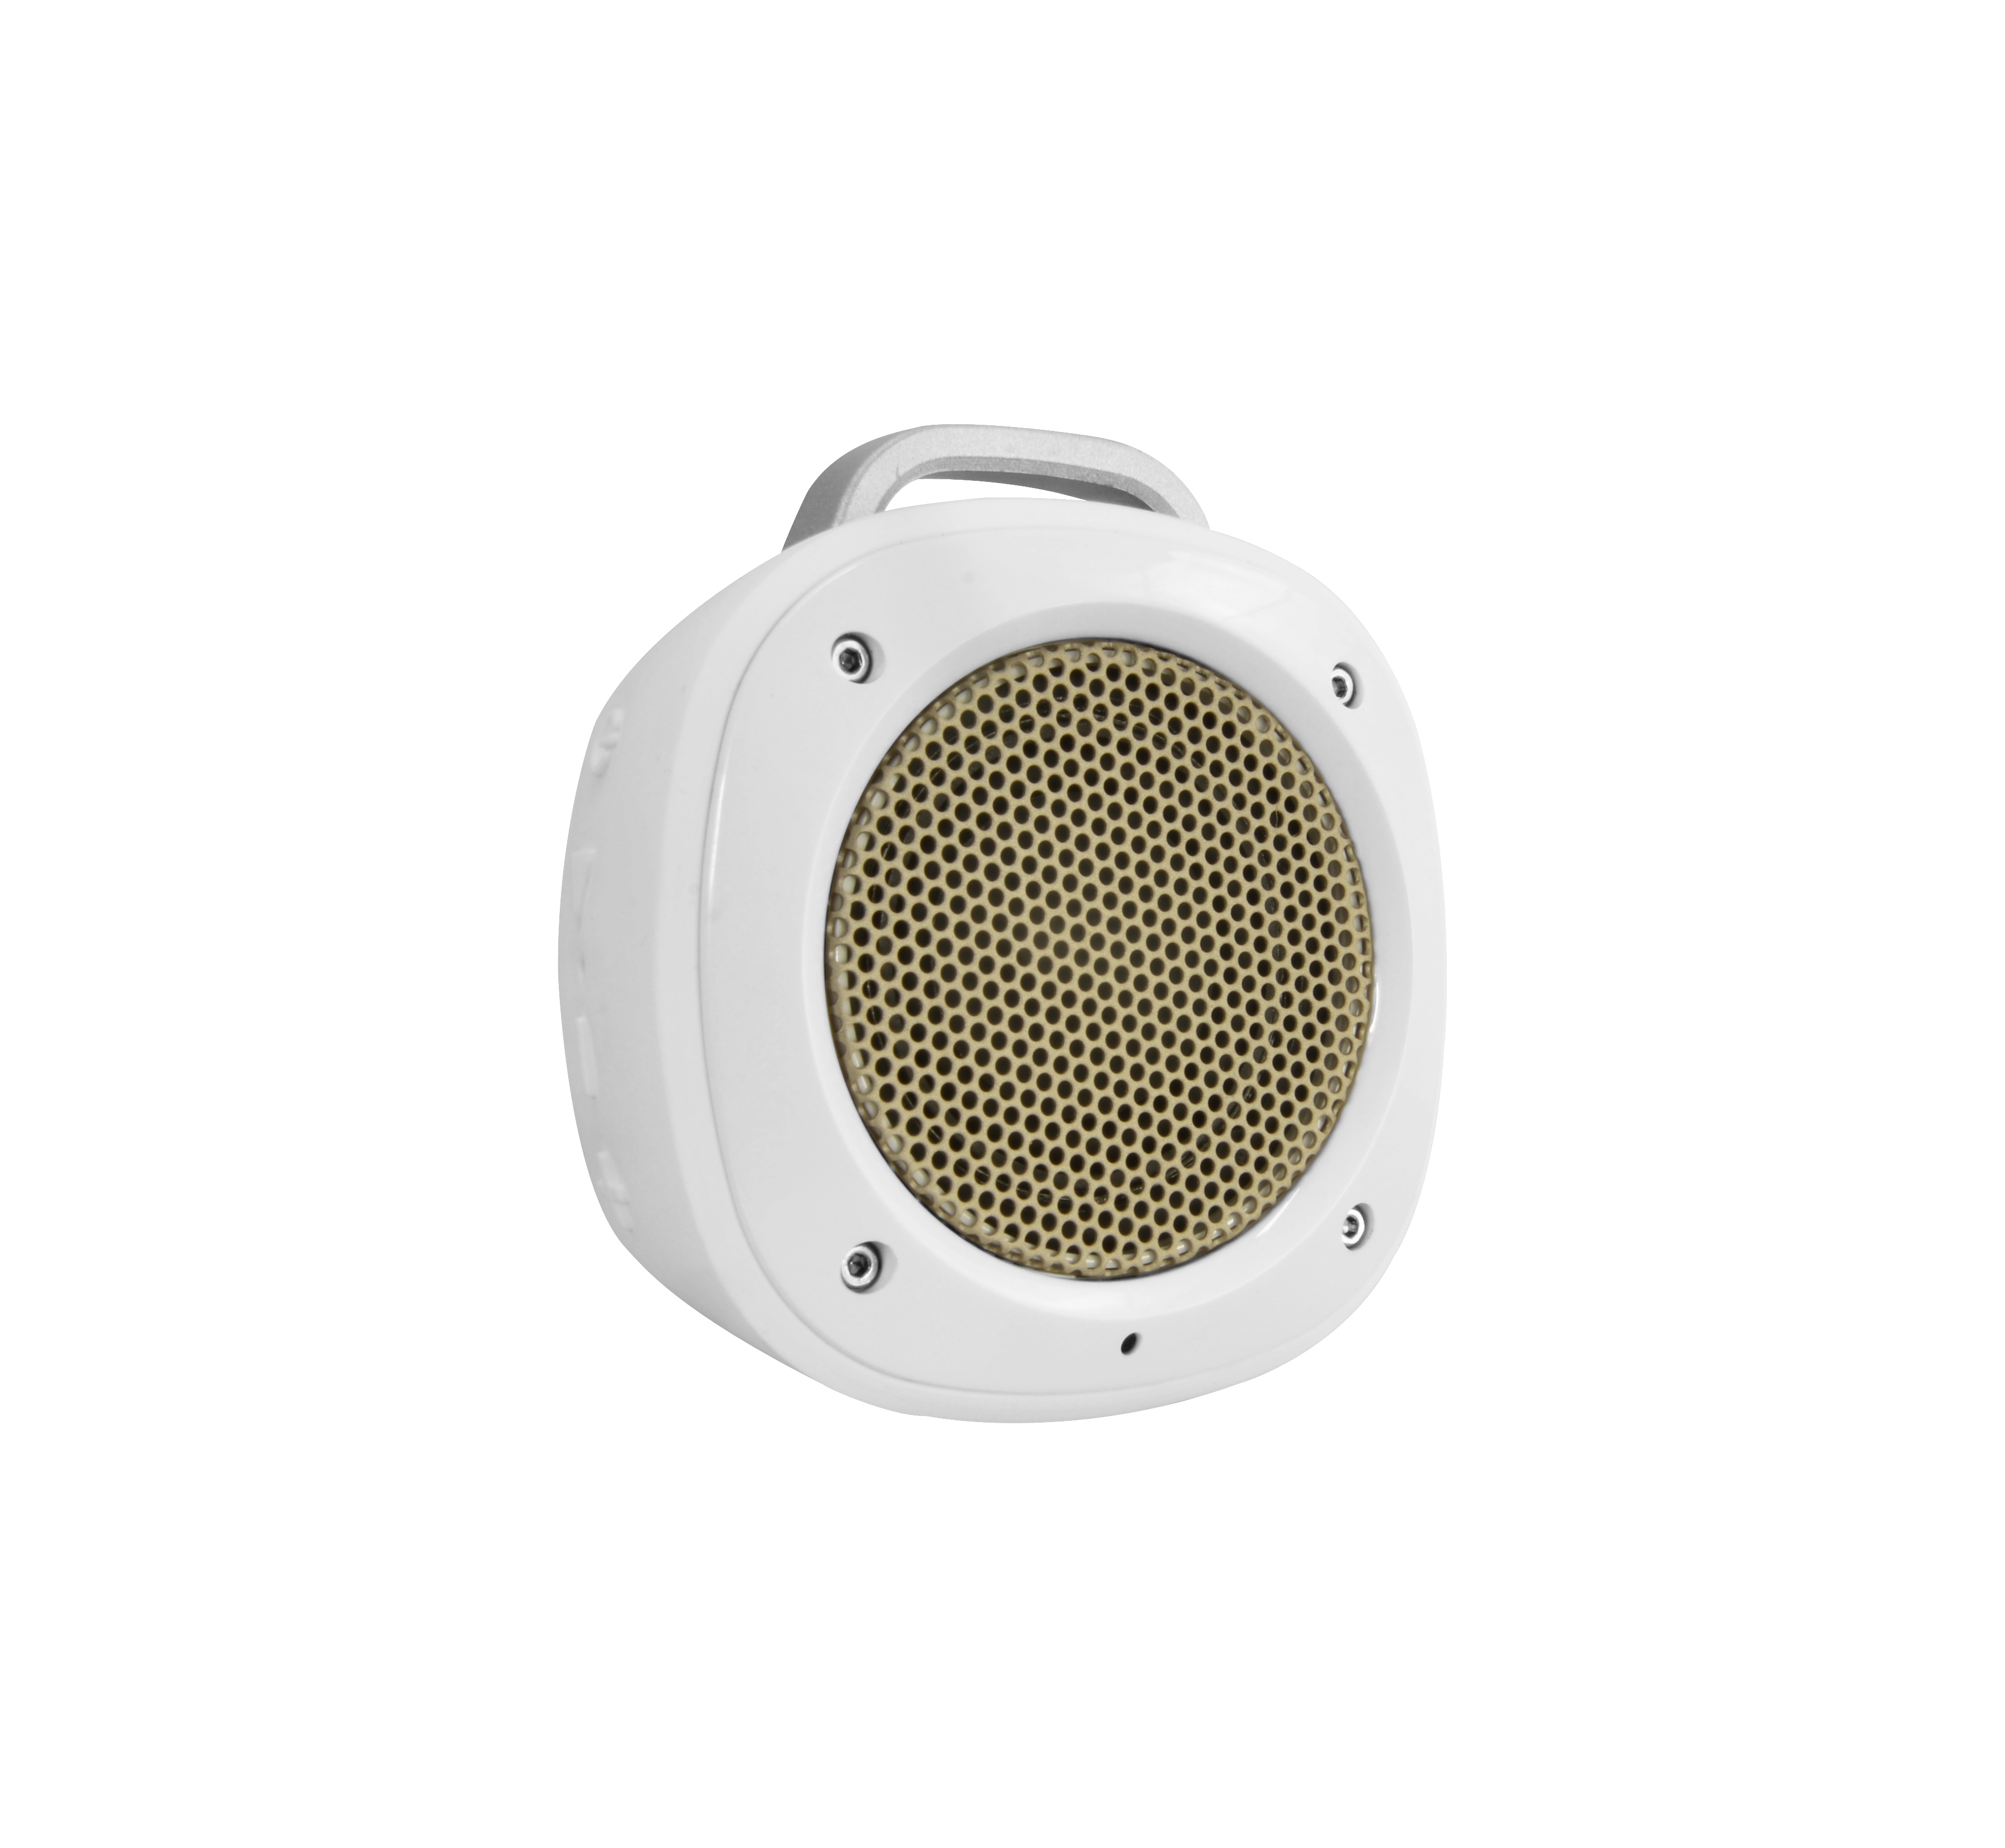 Divoom Airbeat-10 White Bt Speaker